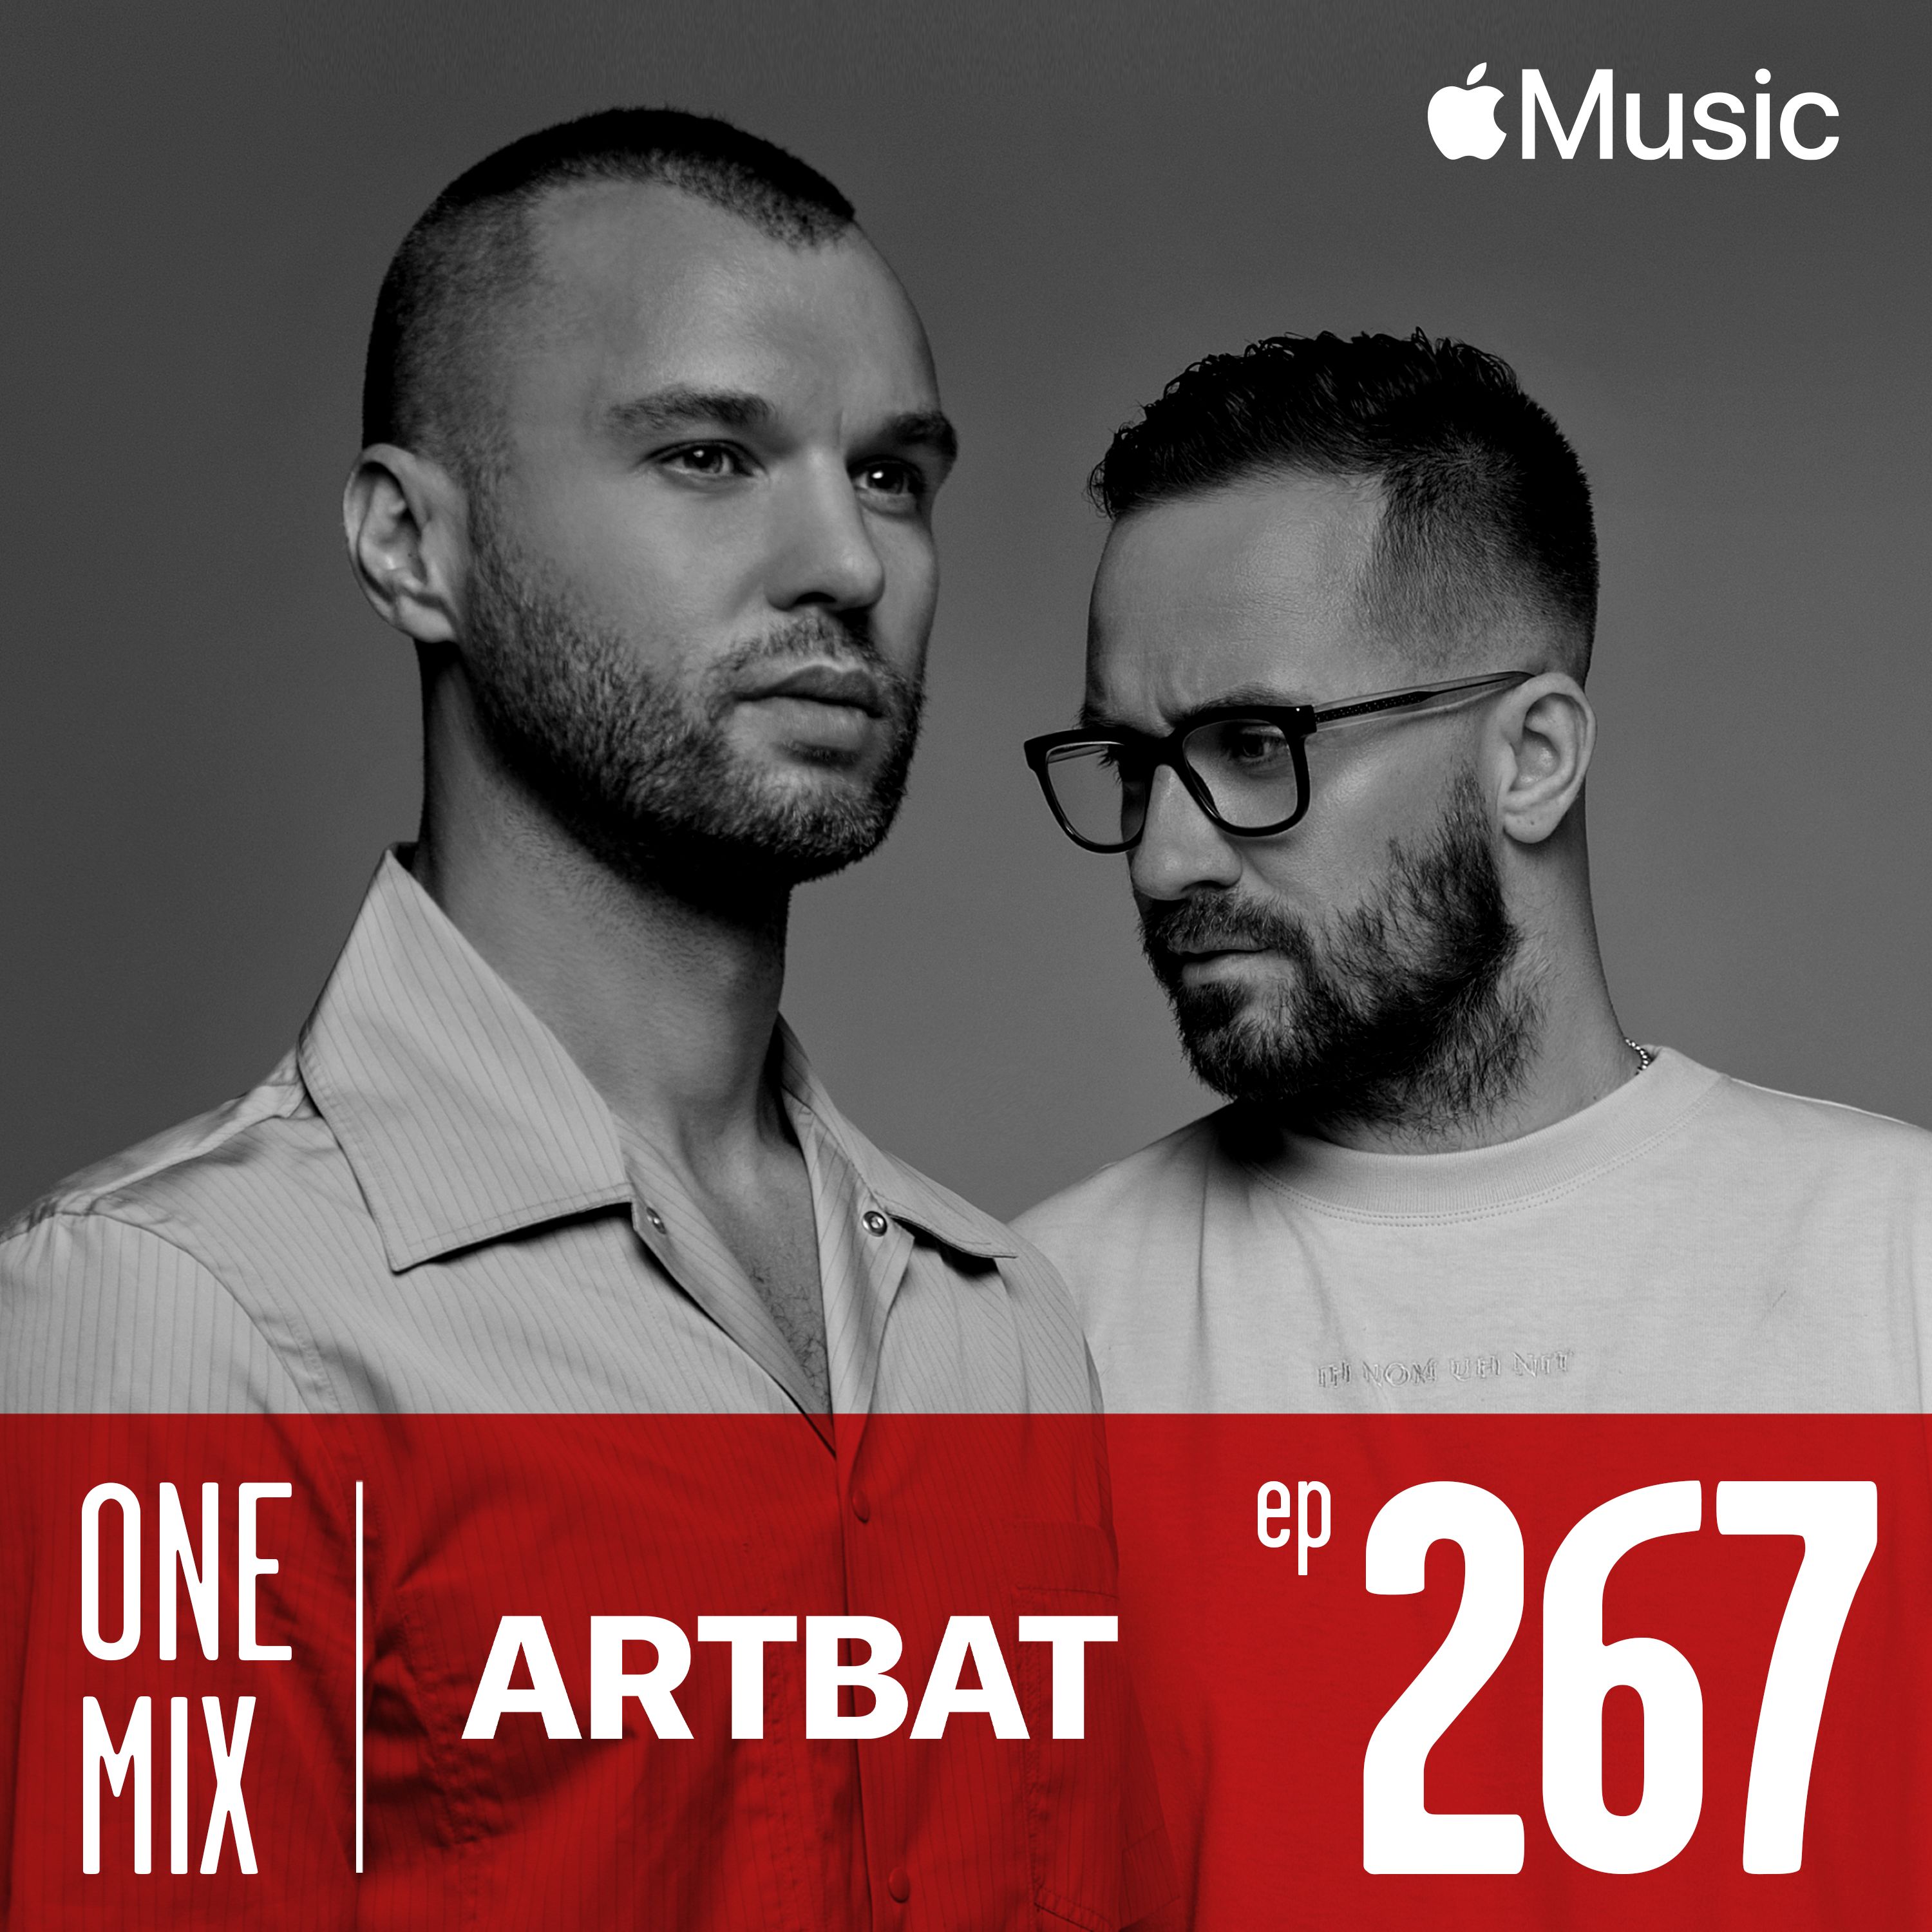 Télécharger One Mix with ARTBAT | #267 Apple Music